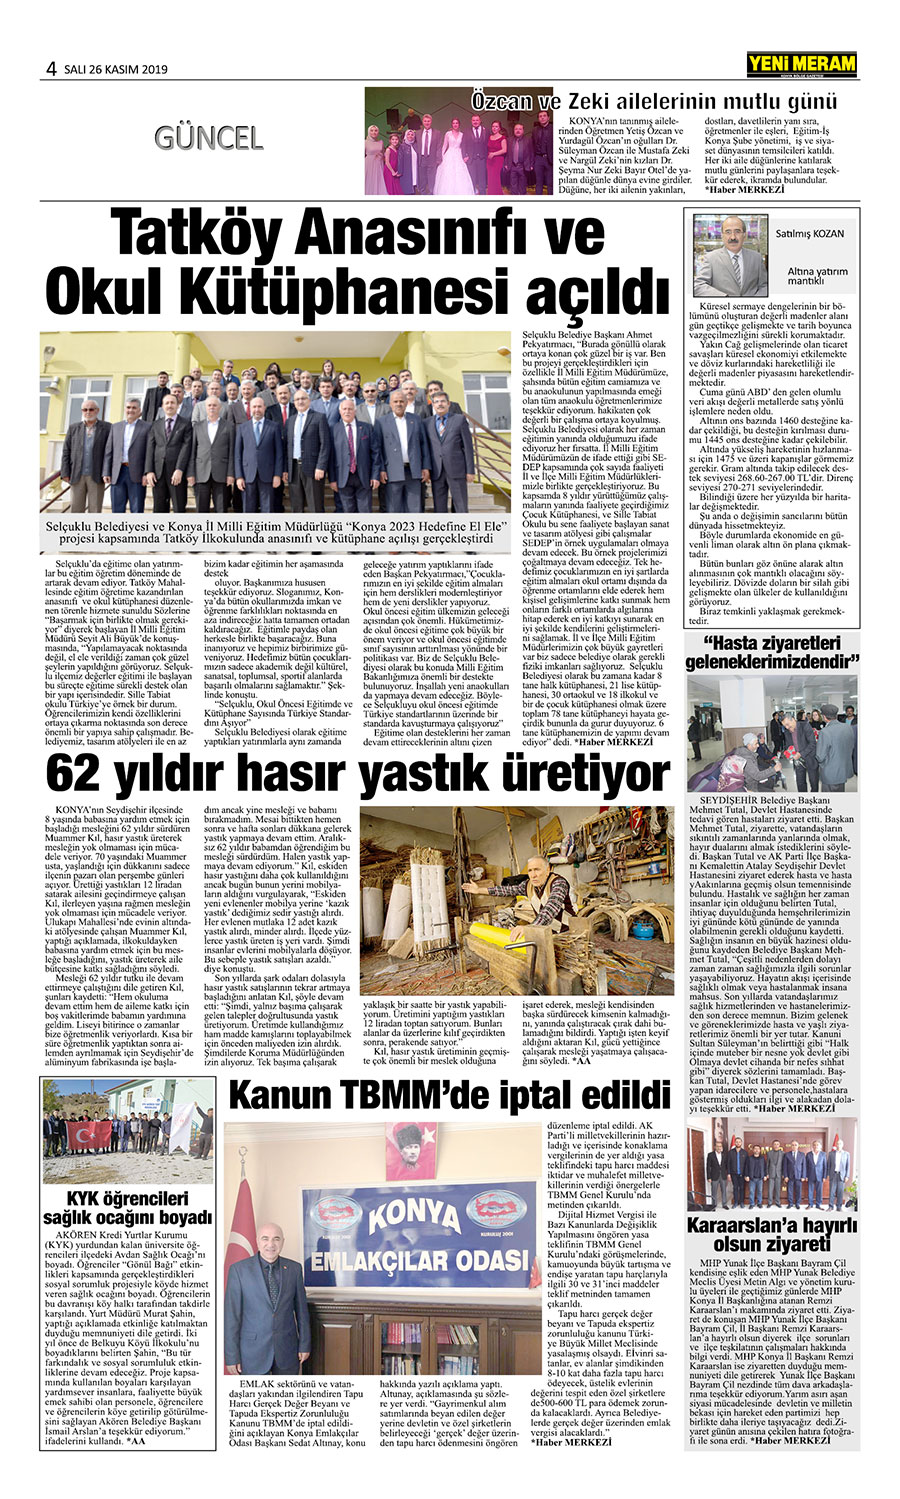 26 Kasım 2019 Yeni Meram Gazetesi